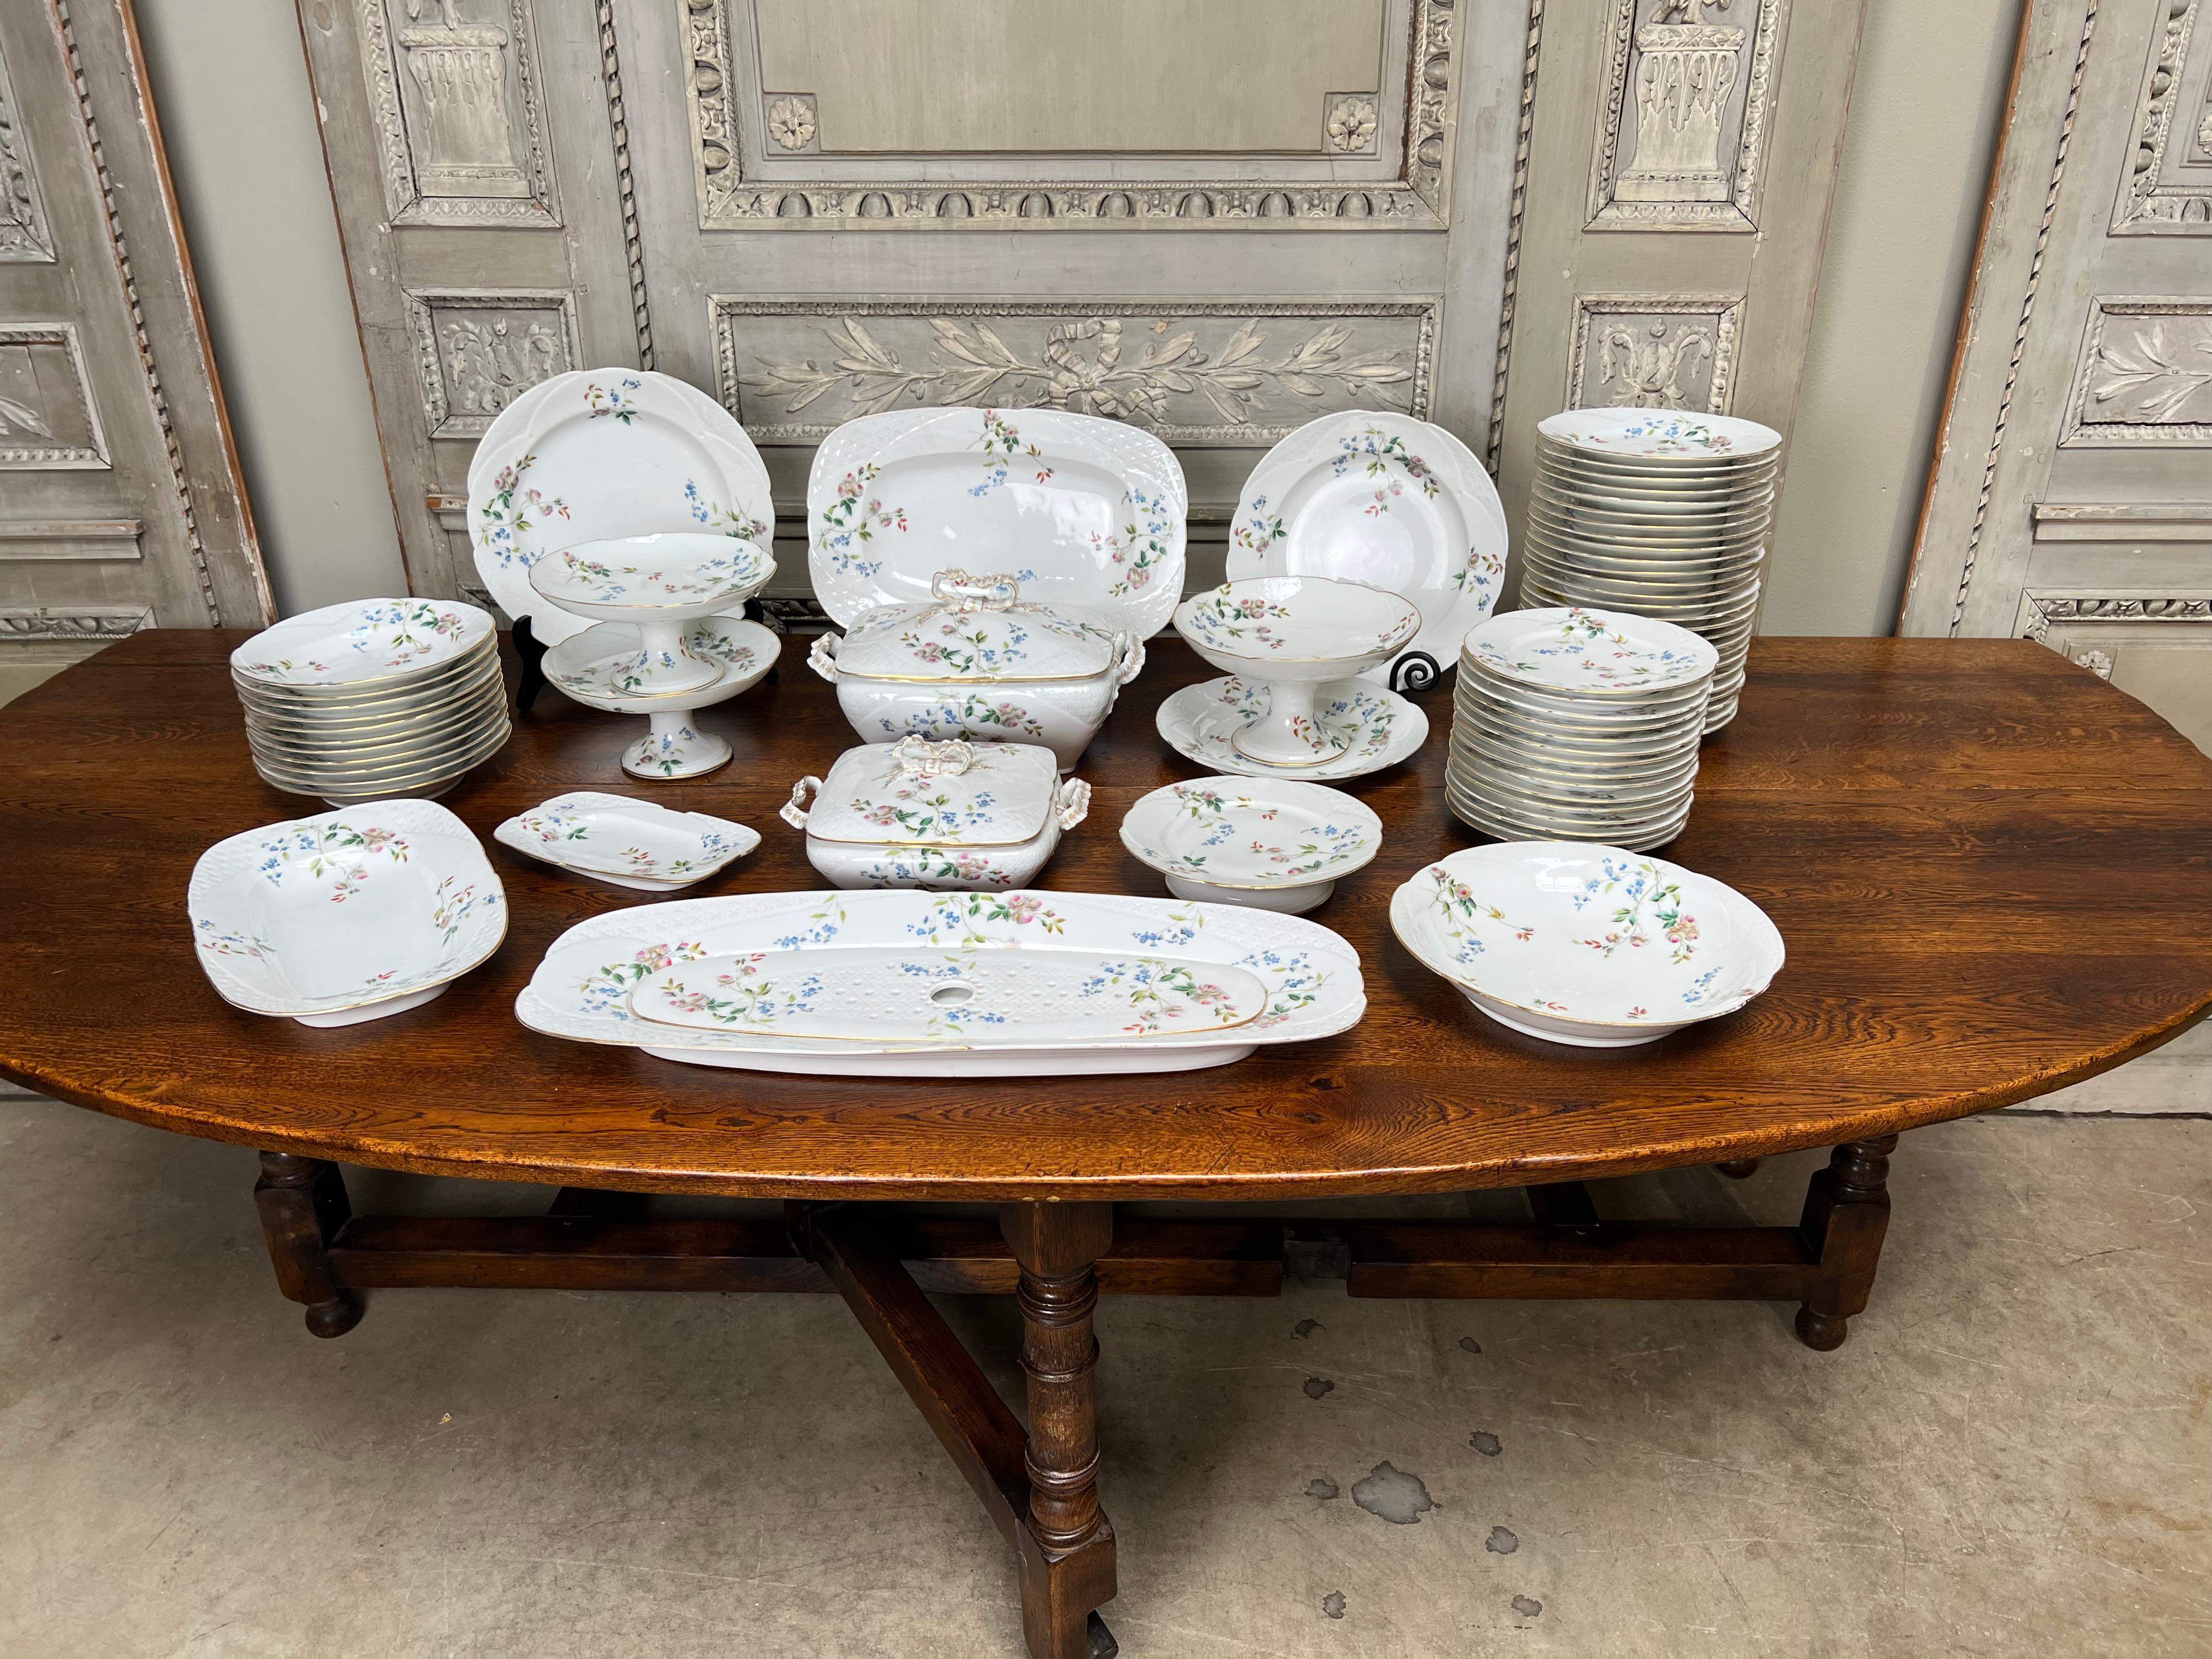 Grand service de table en porcelaine française de style Louis XV à fond blanc avec des motifs floraux roses et bleus et des bordures dorées.  Cet ensemble se compose de 
26 assiettes de 9